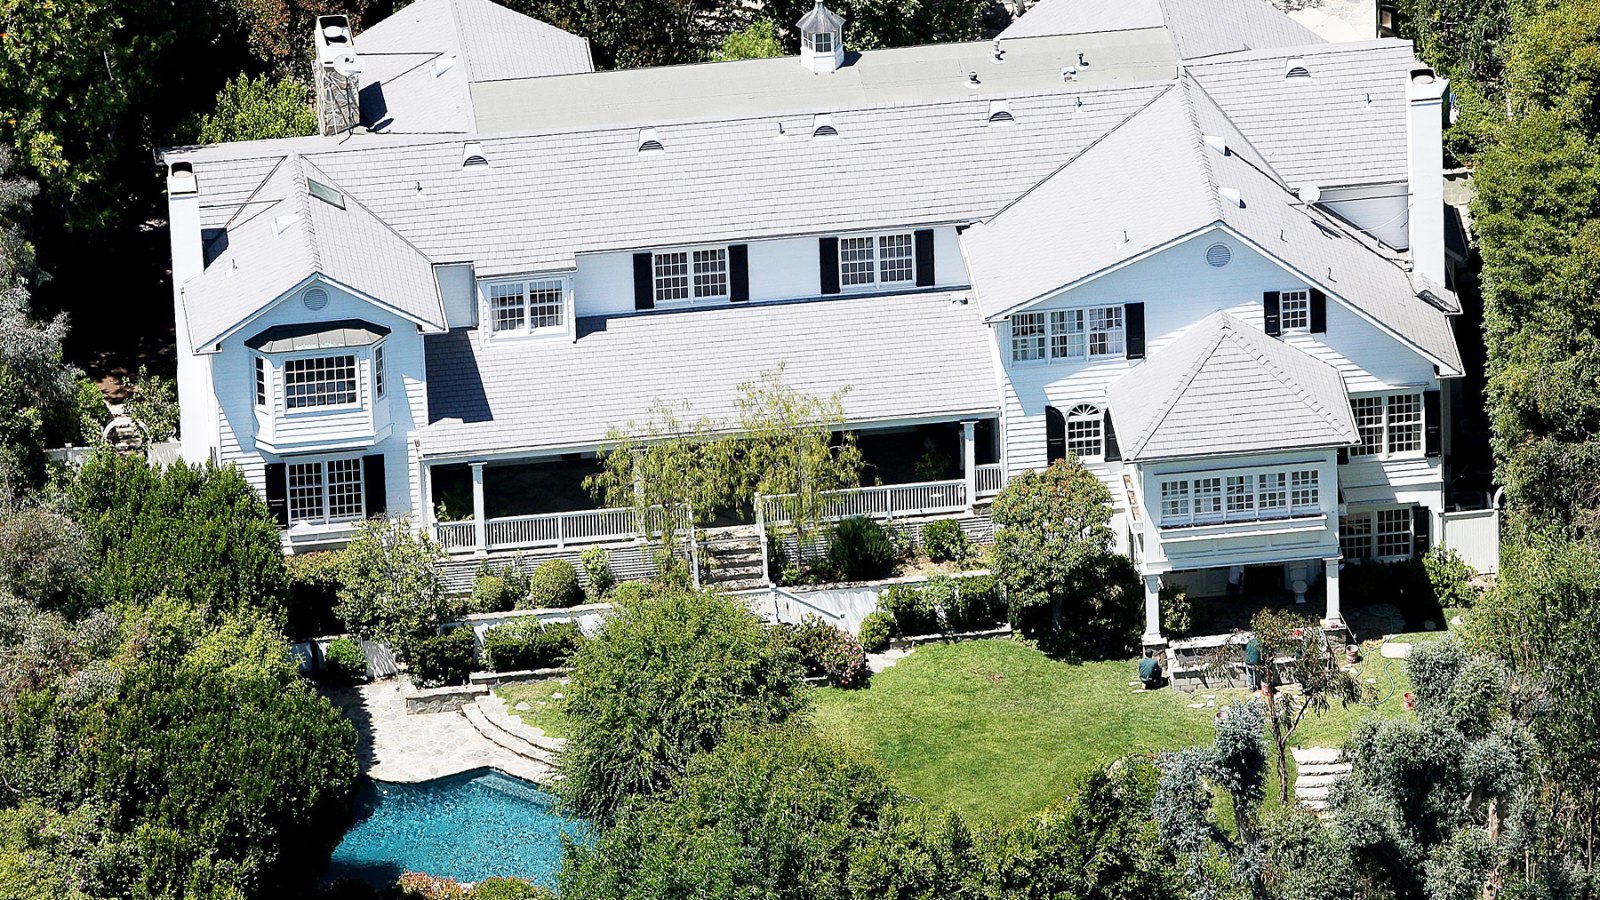 Ashton Kutcher, Mila Kunis purchase $10 million home in Beverly Hills